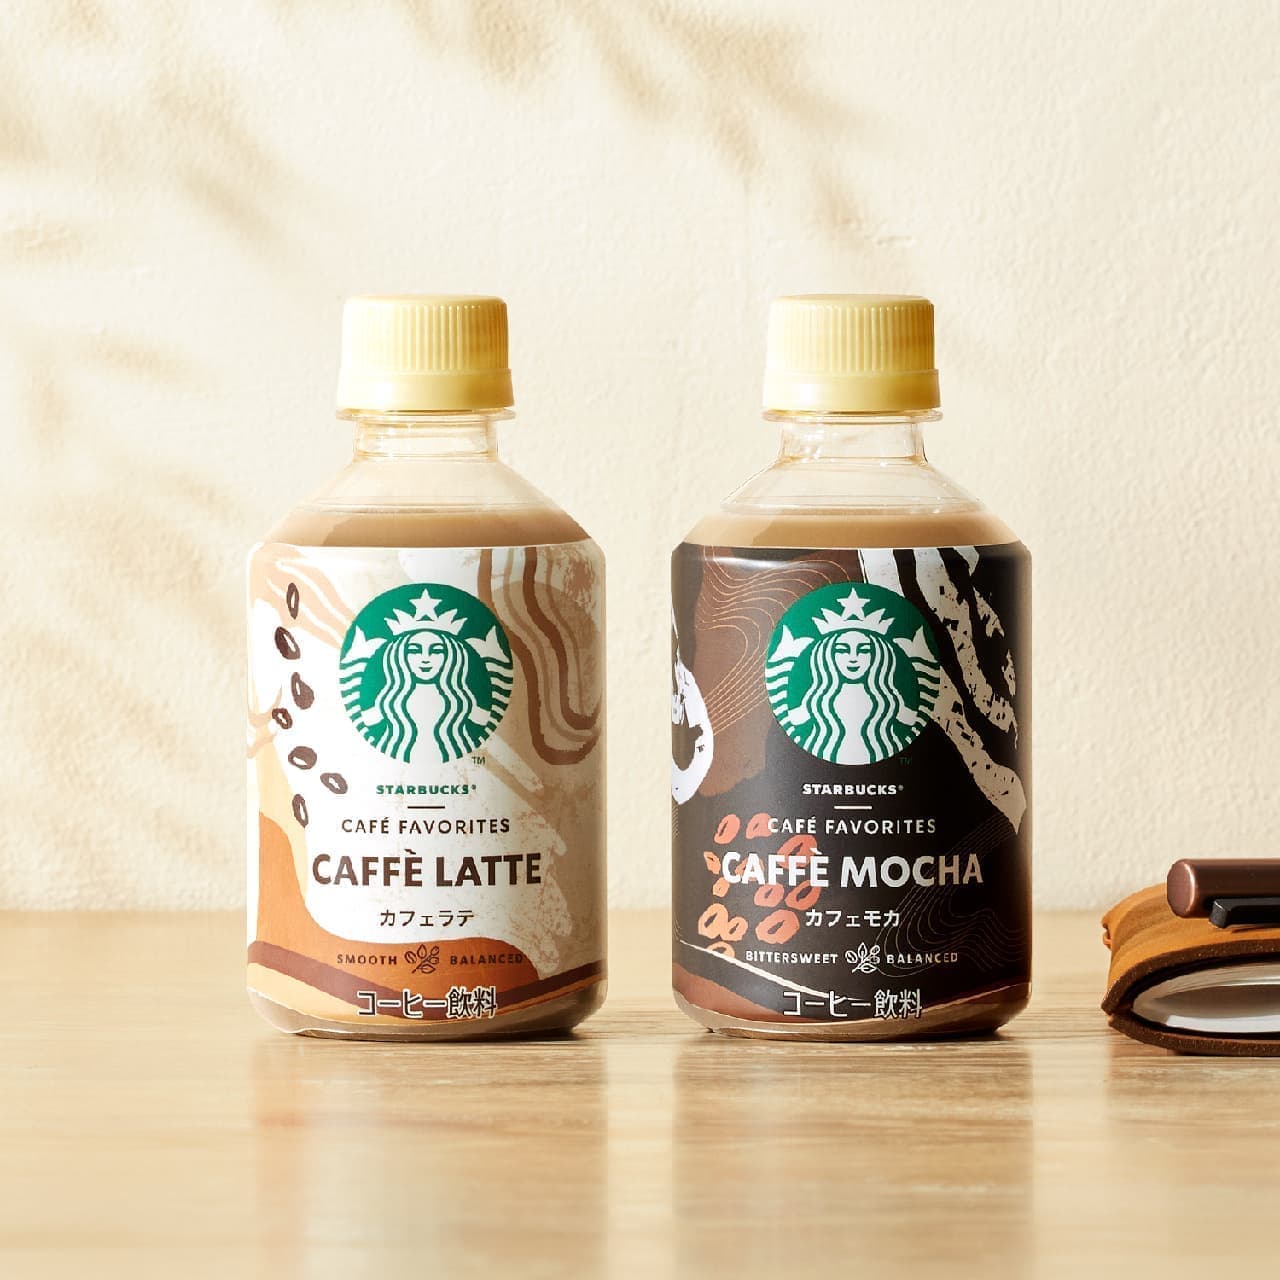  Starbucks CAFE FAVORITES Cafe Mocha" coffee beverage in PET bottles